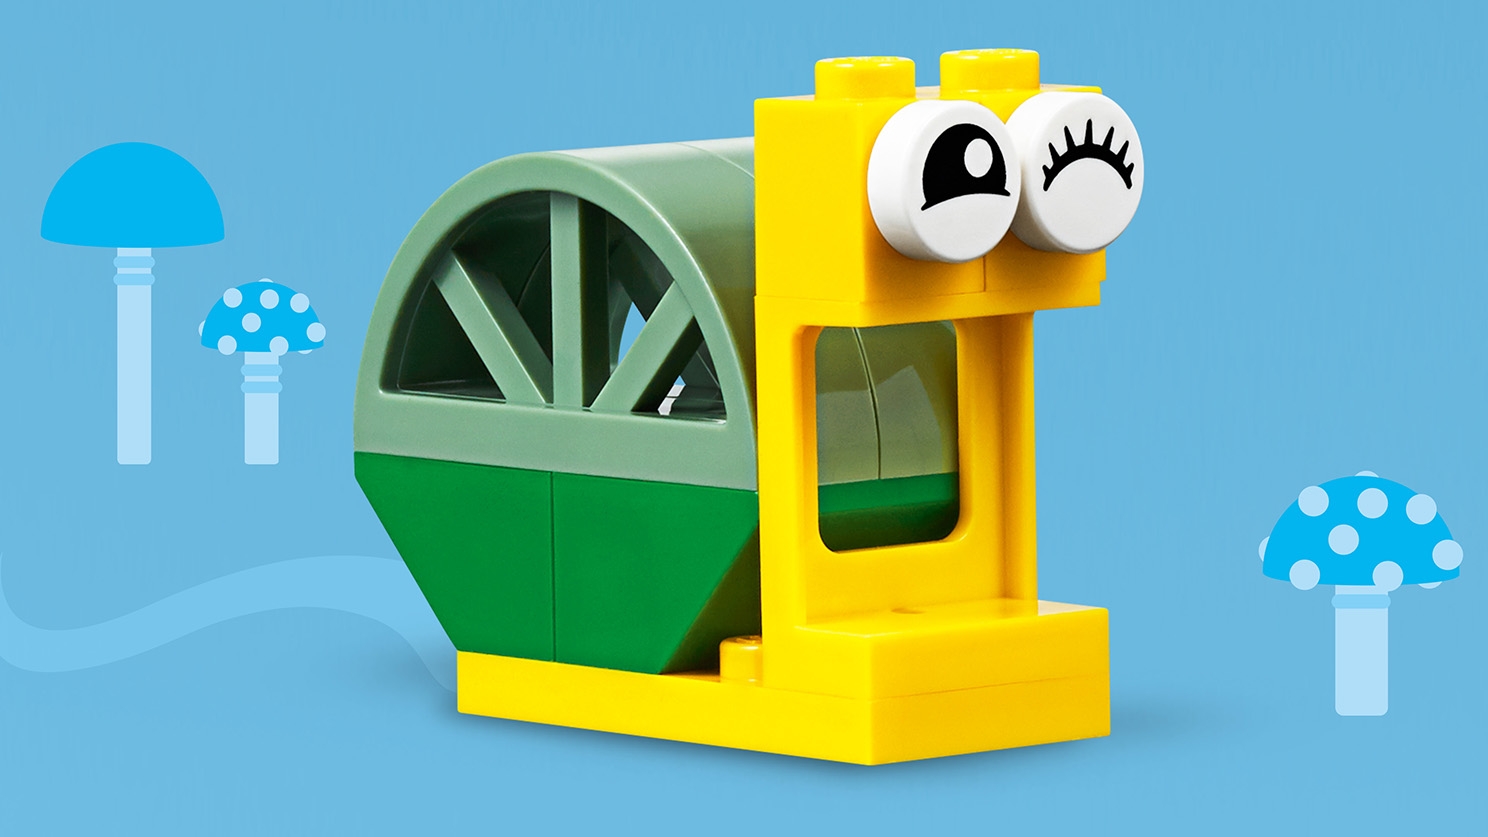 Windows of Creativity 11004 LEGO® Classic Sets LEGO.com for kids